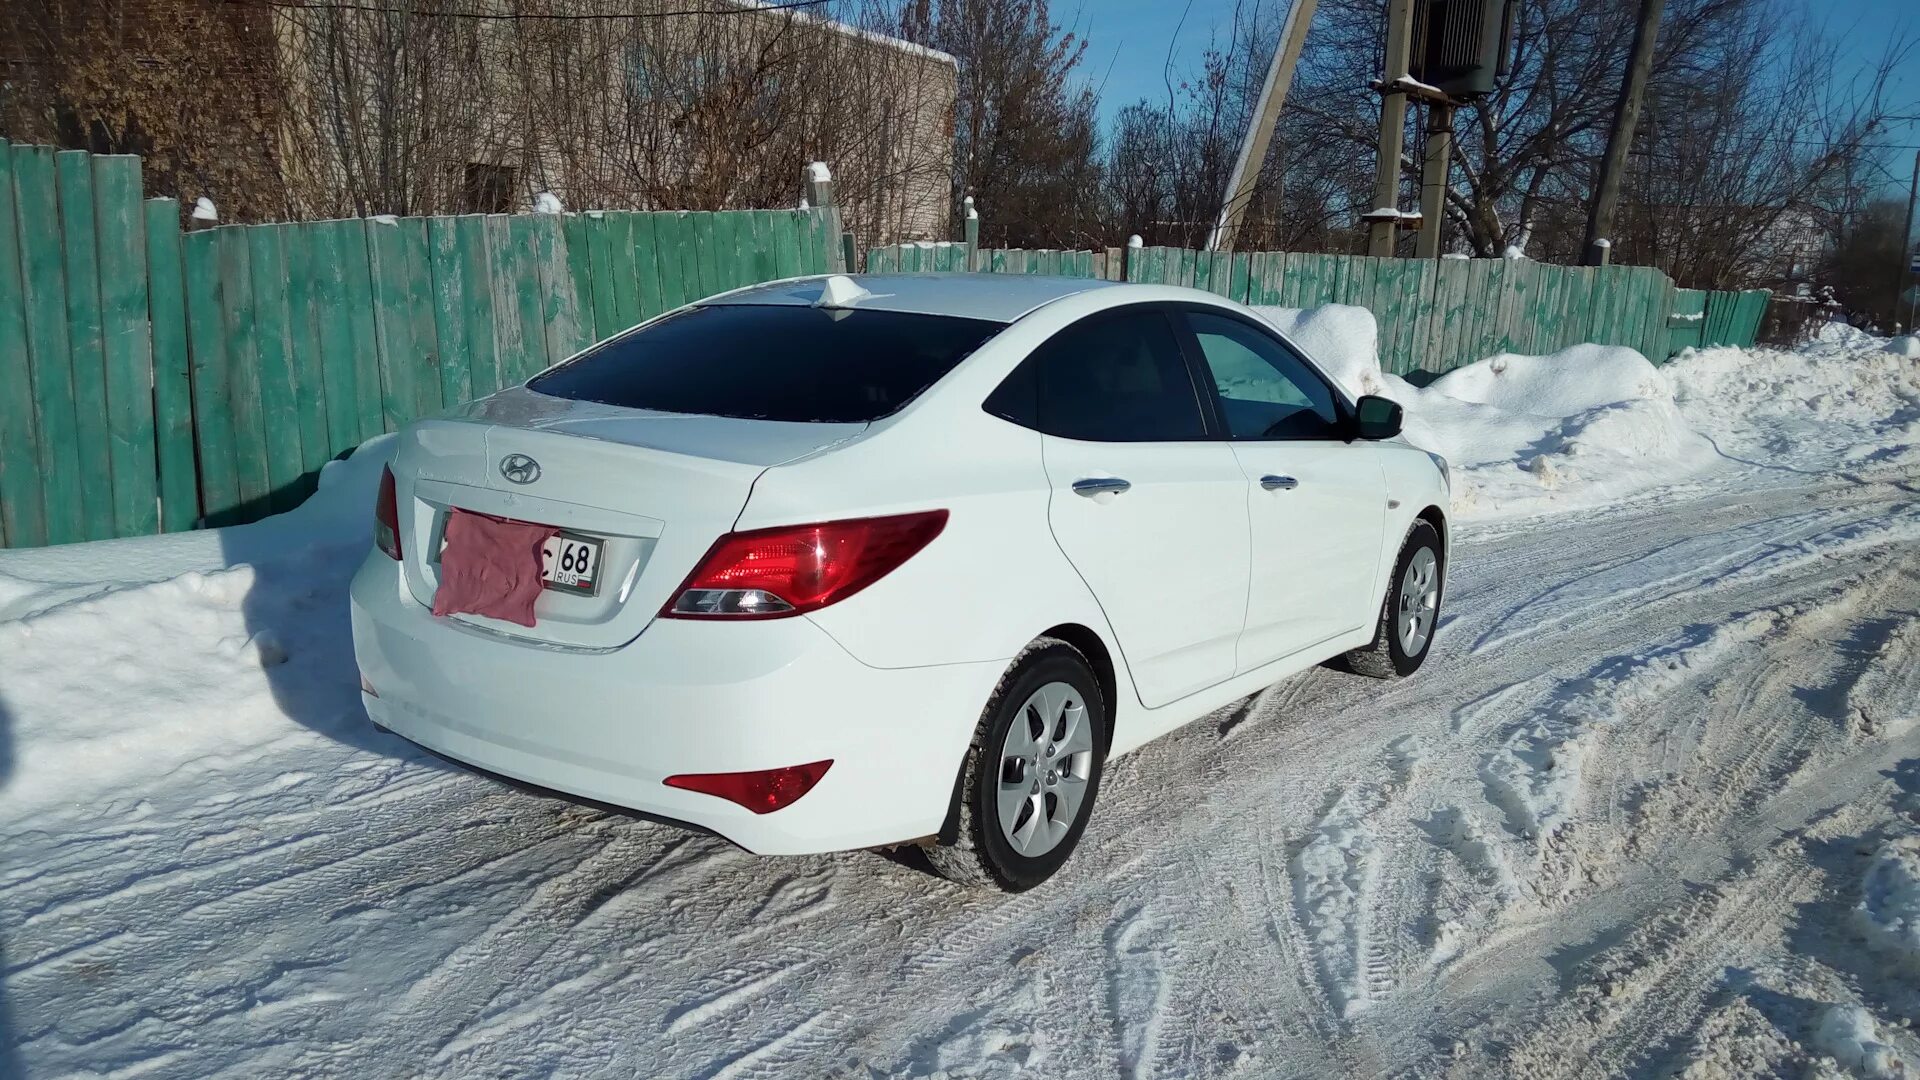 Купить солярис объявления. Hyundai Solaris 2013 белый зима. Белый Солярис зимой. Хендай Солярис белый зимой. Солярис 2016 белая бункер.